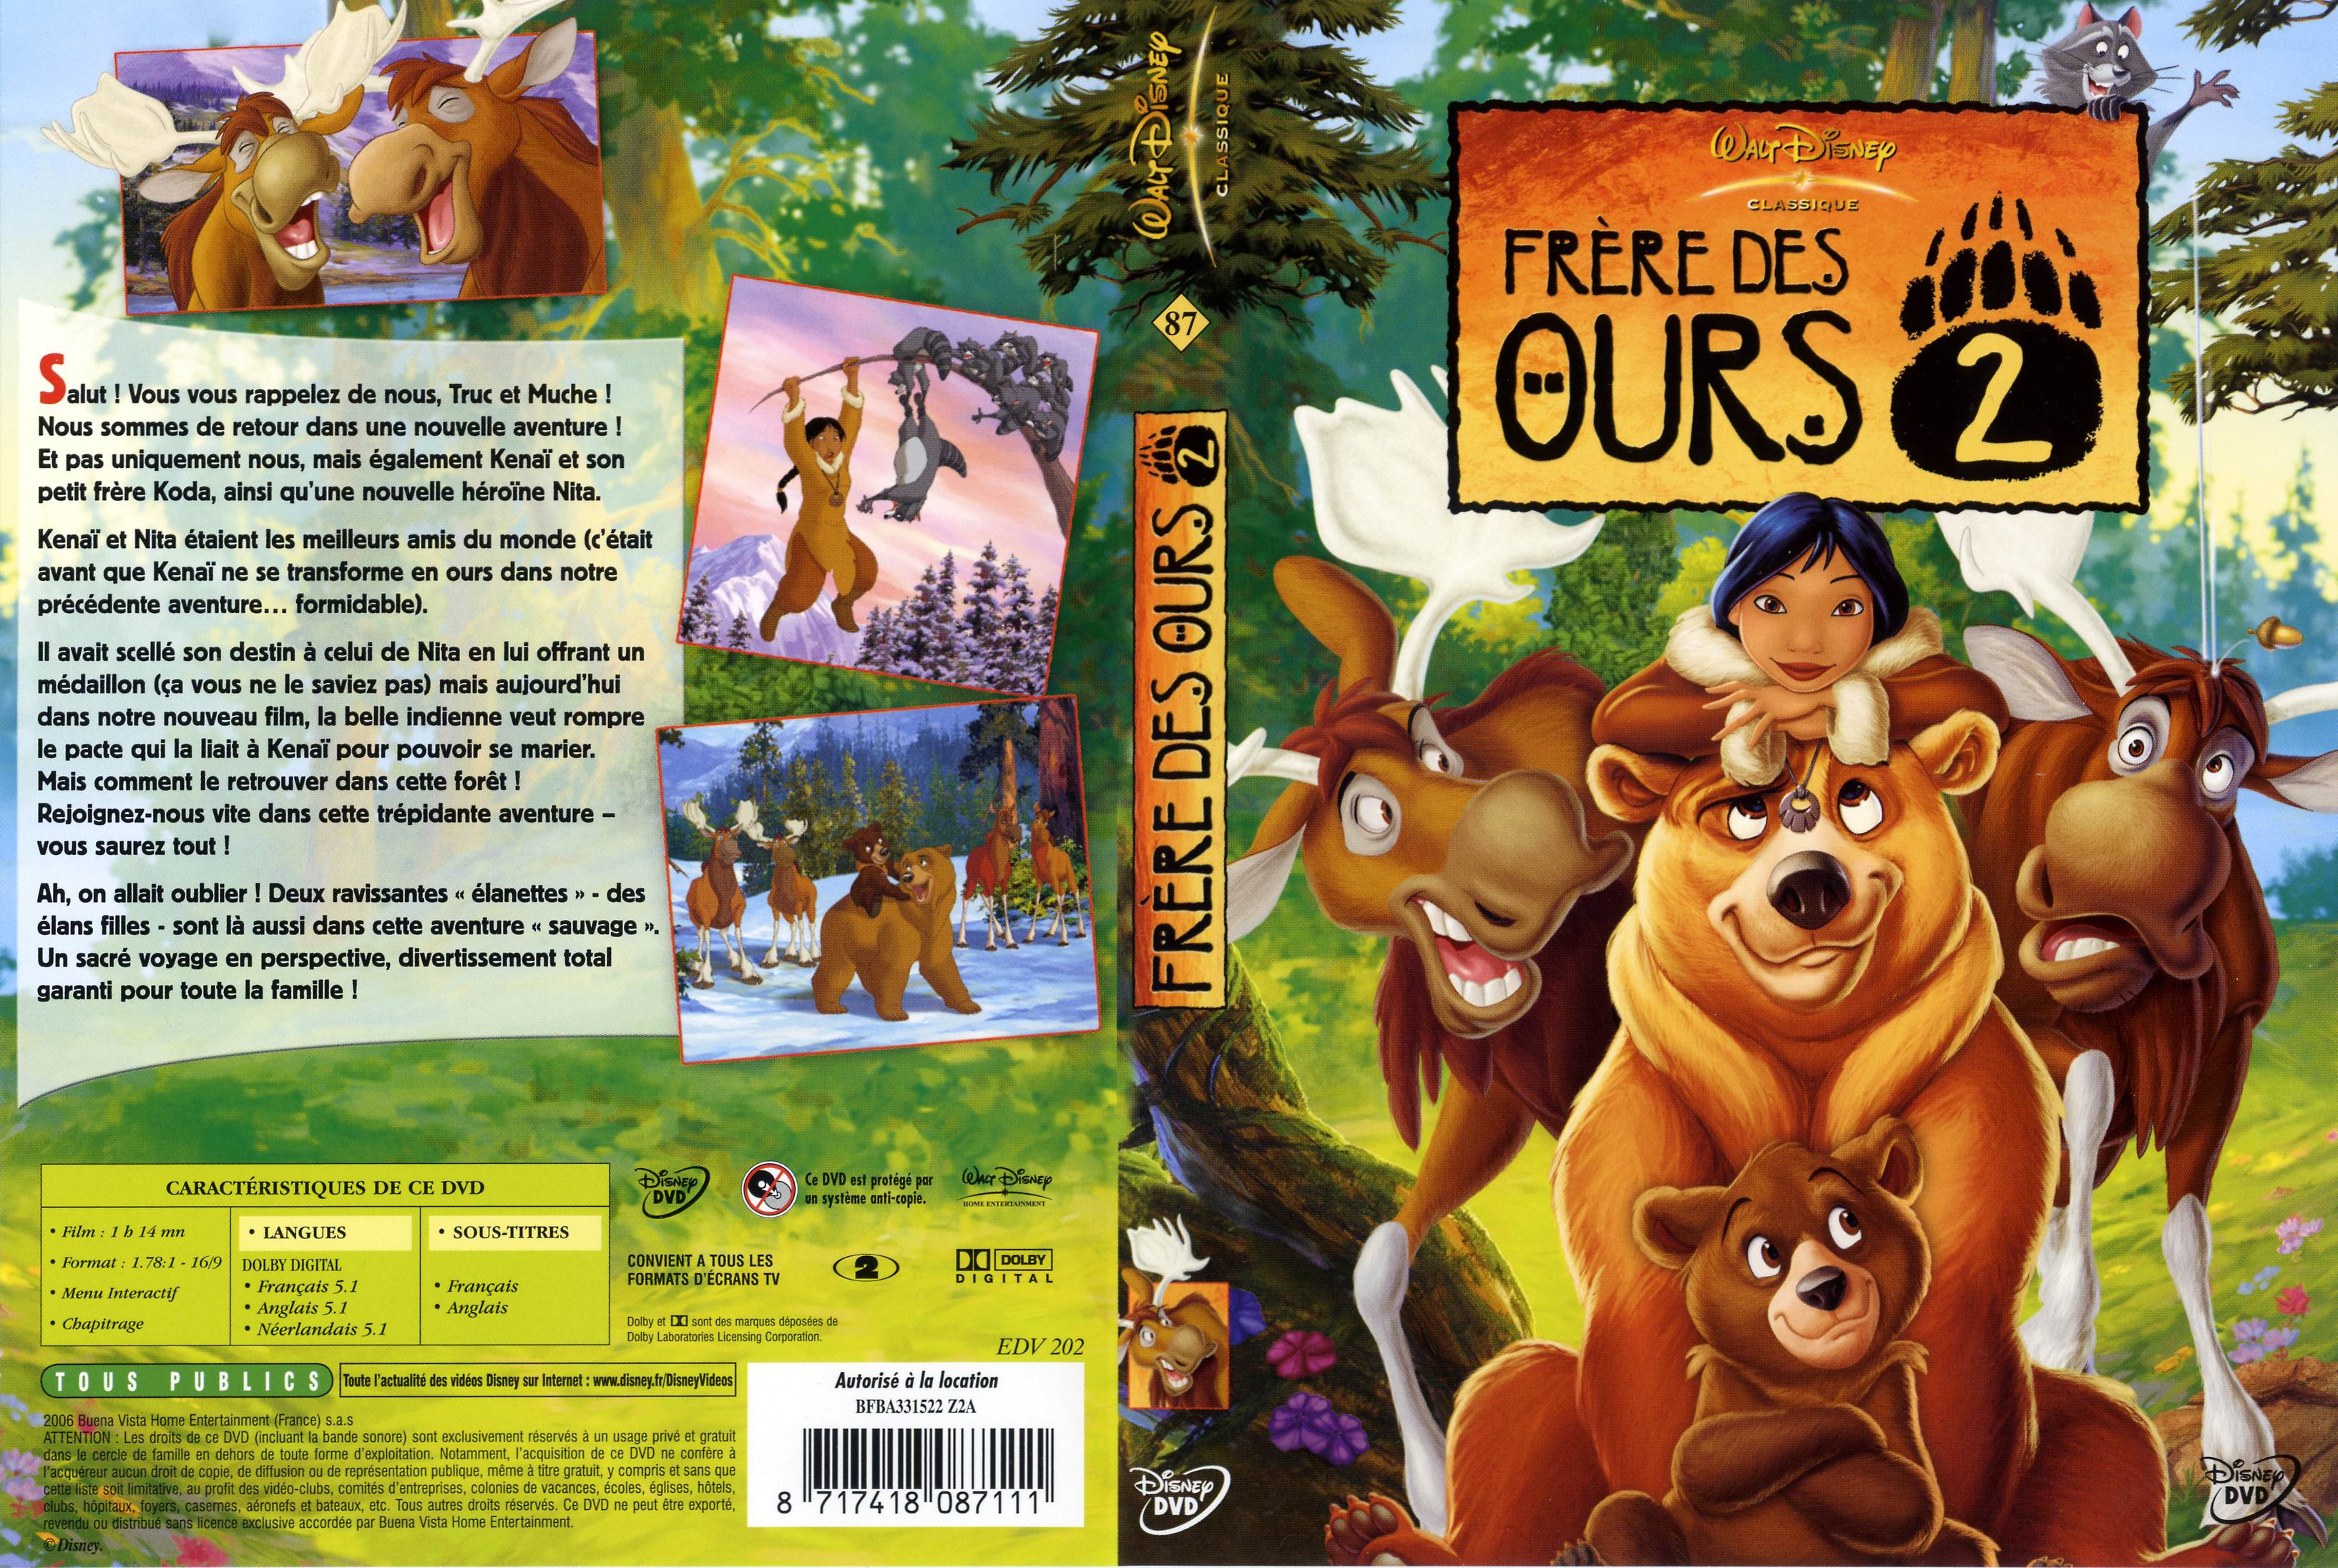 Jaquette DVD Frre des ours 2